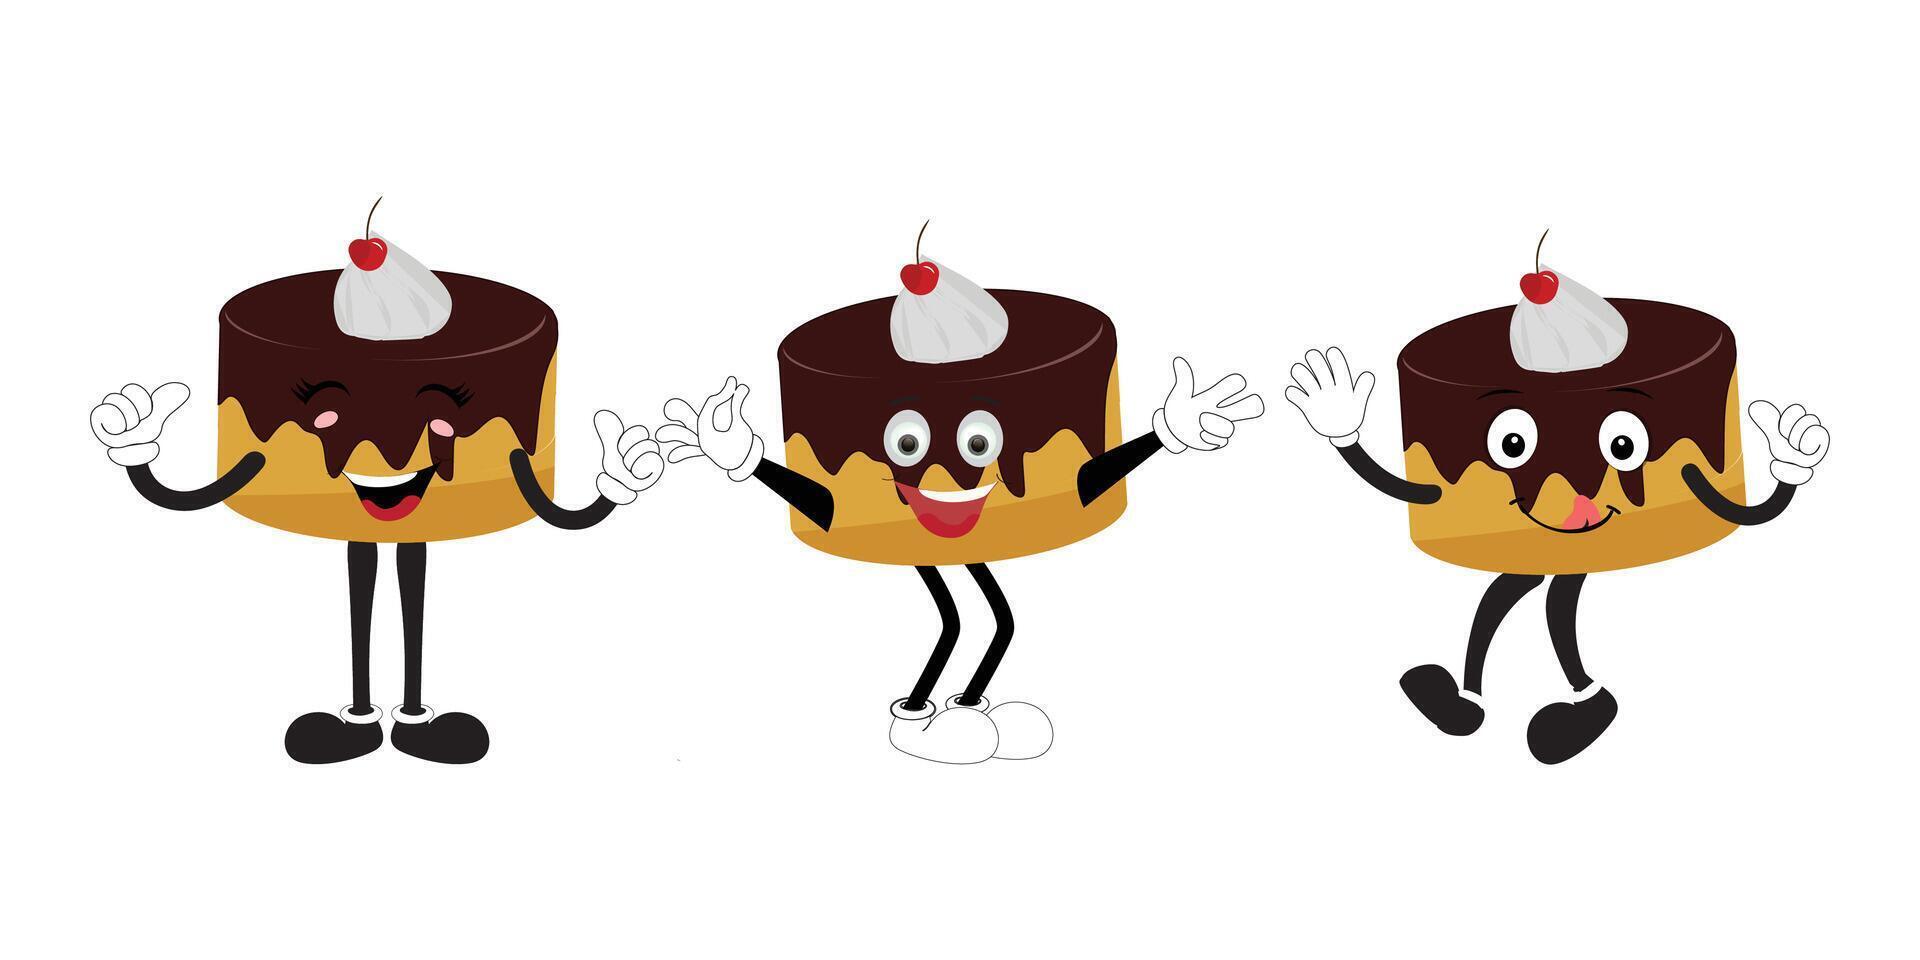 maravilloso pastel rebanado dibujos animados mascota personaje con sonrisa. gracioso retro cumpleaños pastel rebanada en zapatillas, confitería mascota, gráfico elemento para sitio web vector